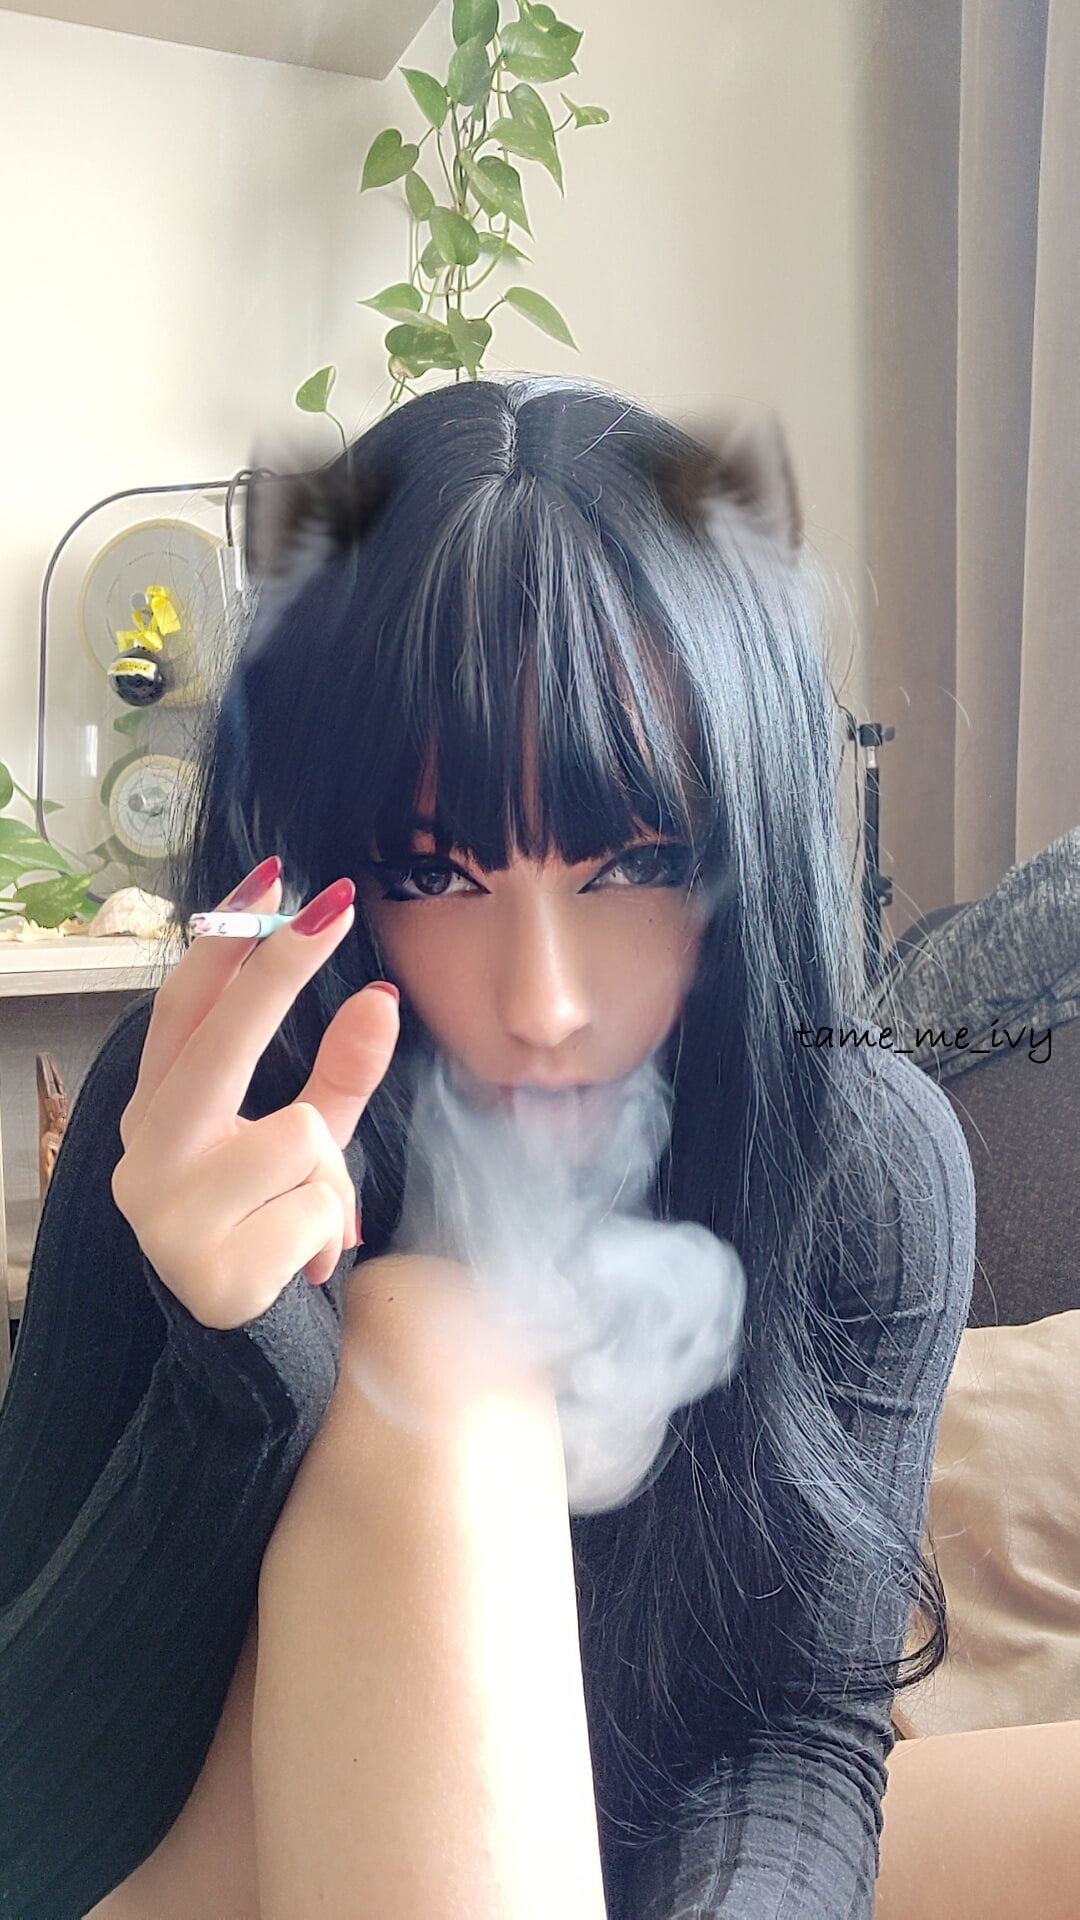 Goth Girl smoking #7